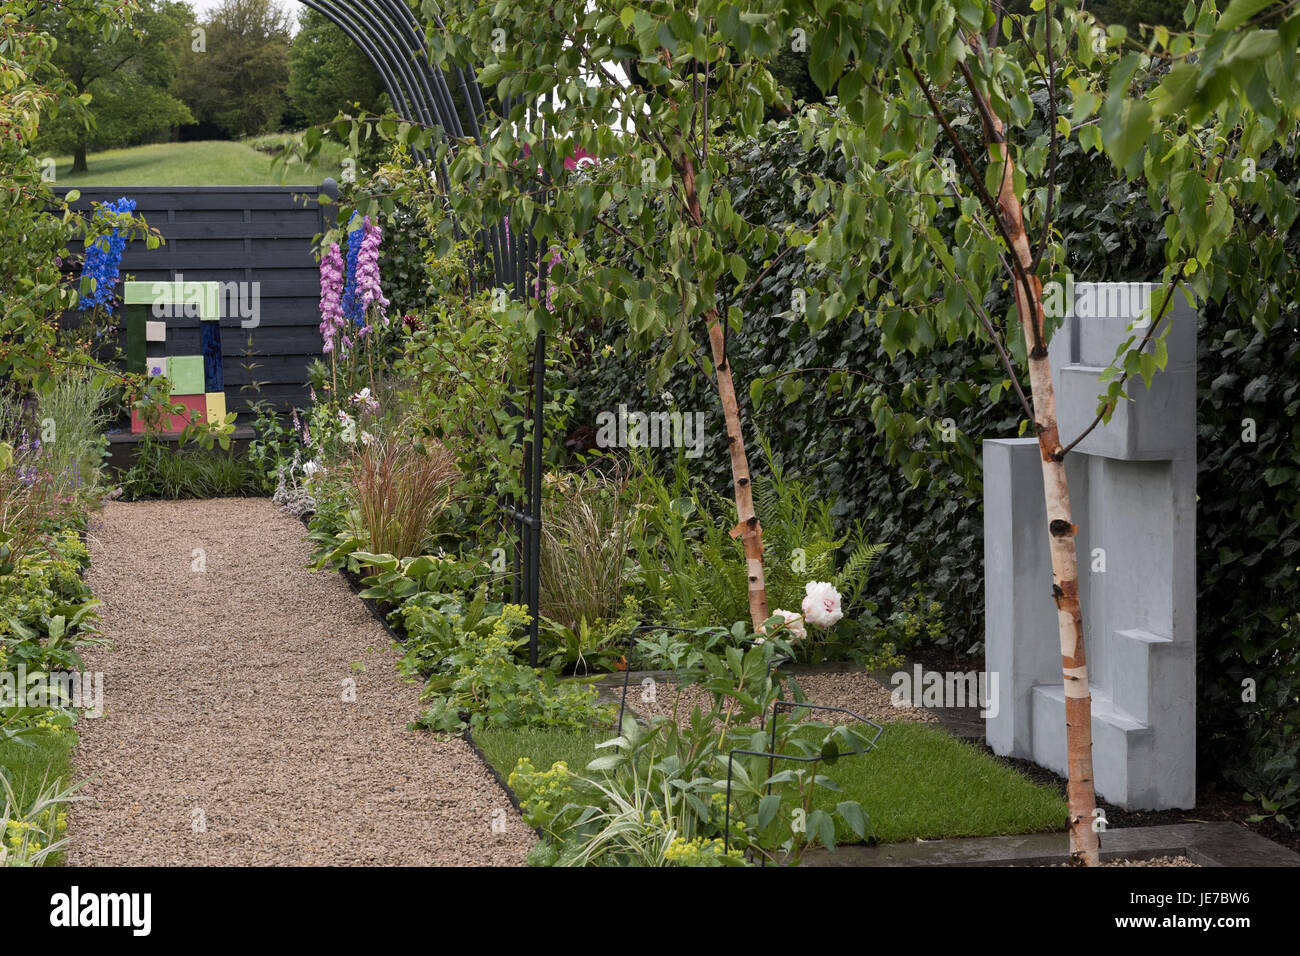 Weg & Grenze in modernistischen & Bauhaus inspirierte Agriframes Garten bei der ersten RHS Chatsworth Flower Show - Chatsworth House, Derbyshire, England, UK. Stockfoto